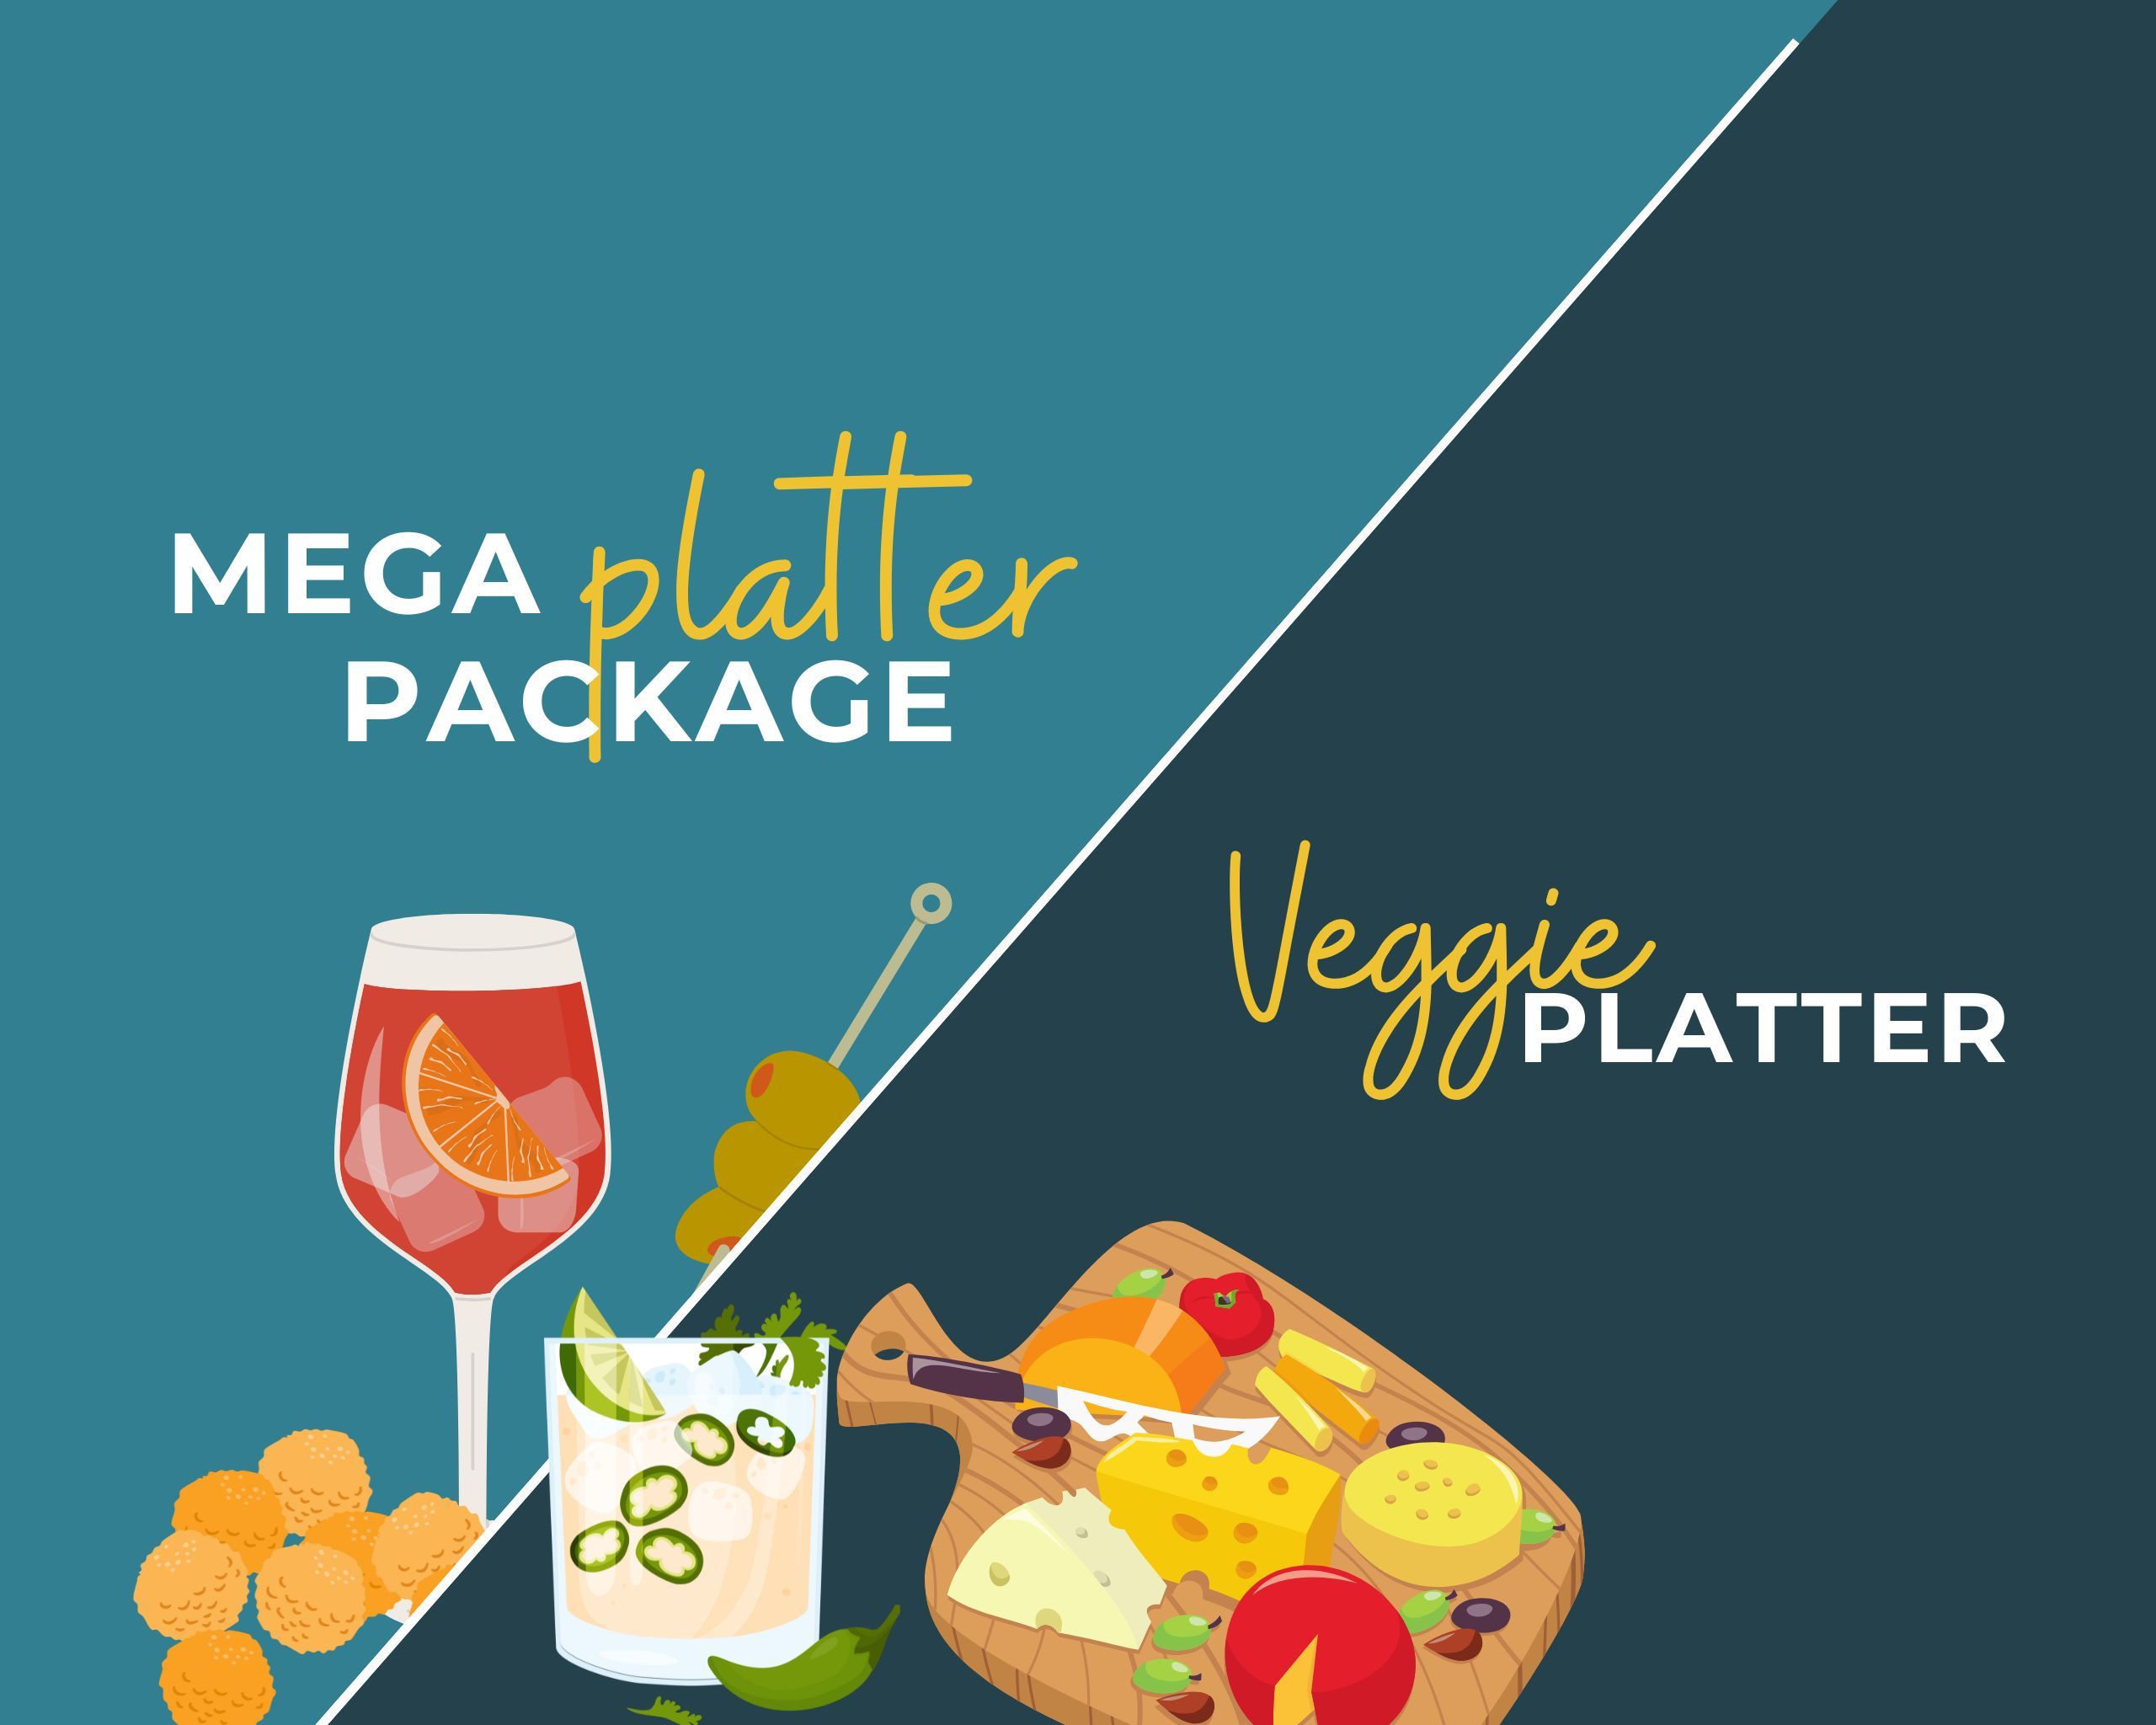 Meha platter package and veggie platter